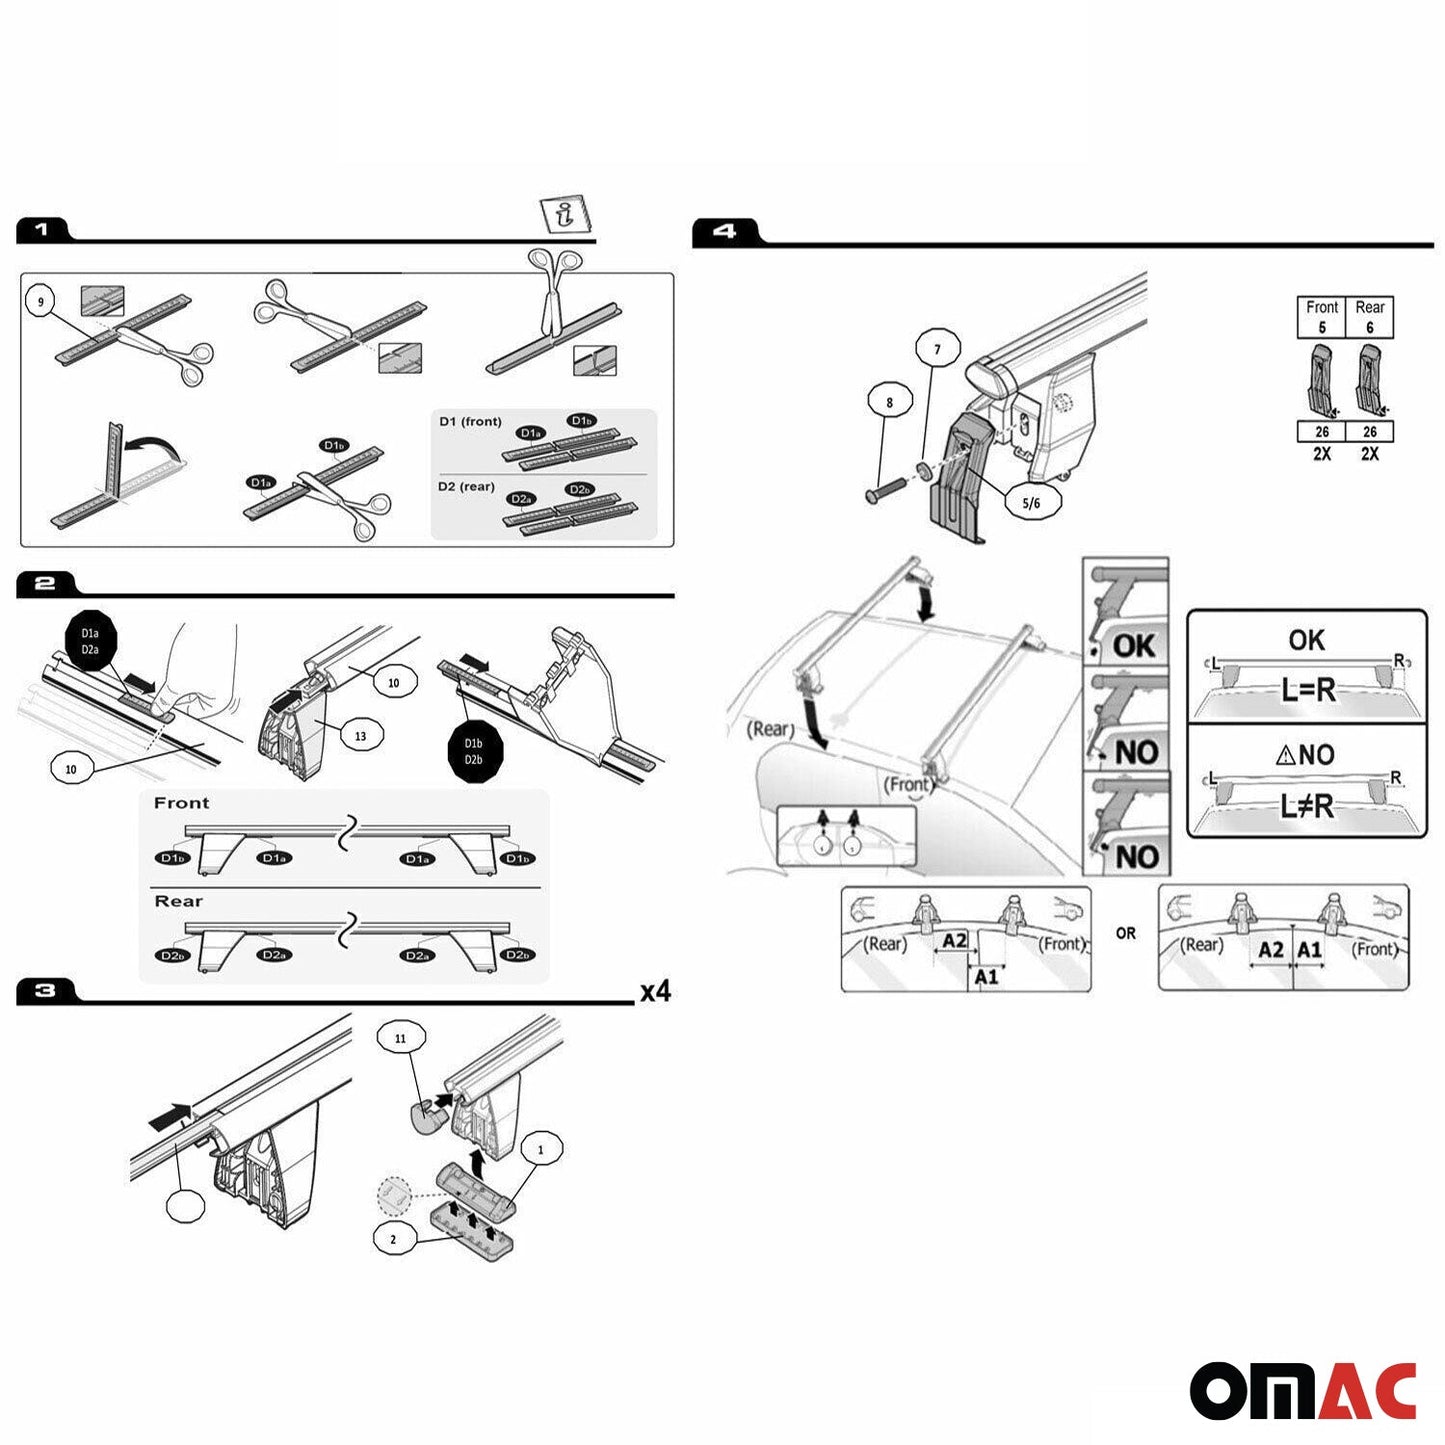 OMAC Top Roof Racks Cross Bars fits Honda Civic 2016-2021 Silver 2Pcs Aluminium G003547